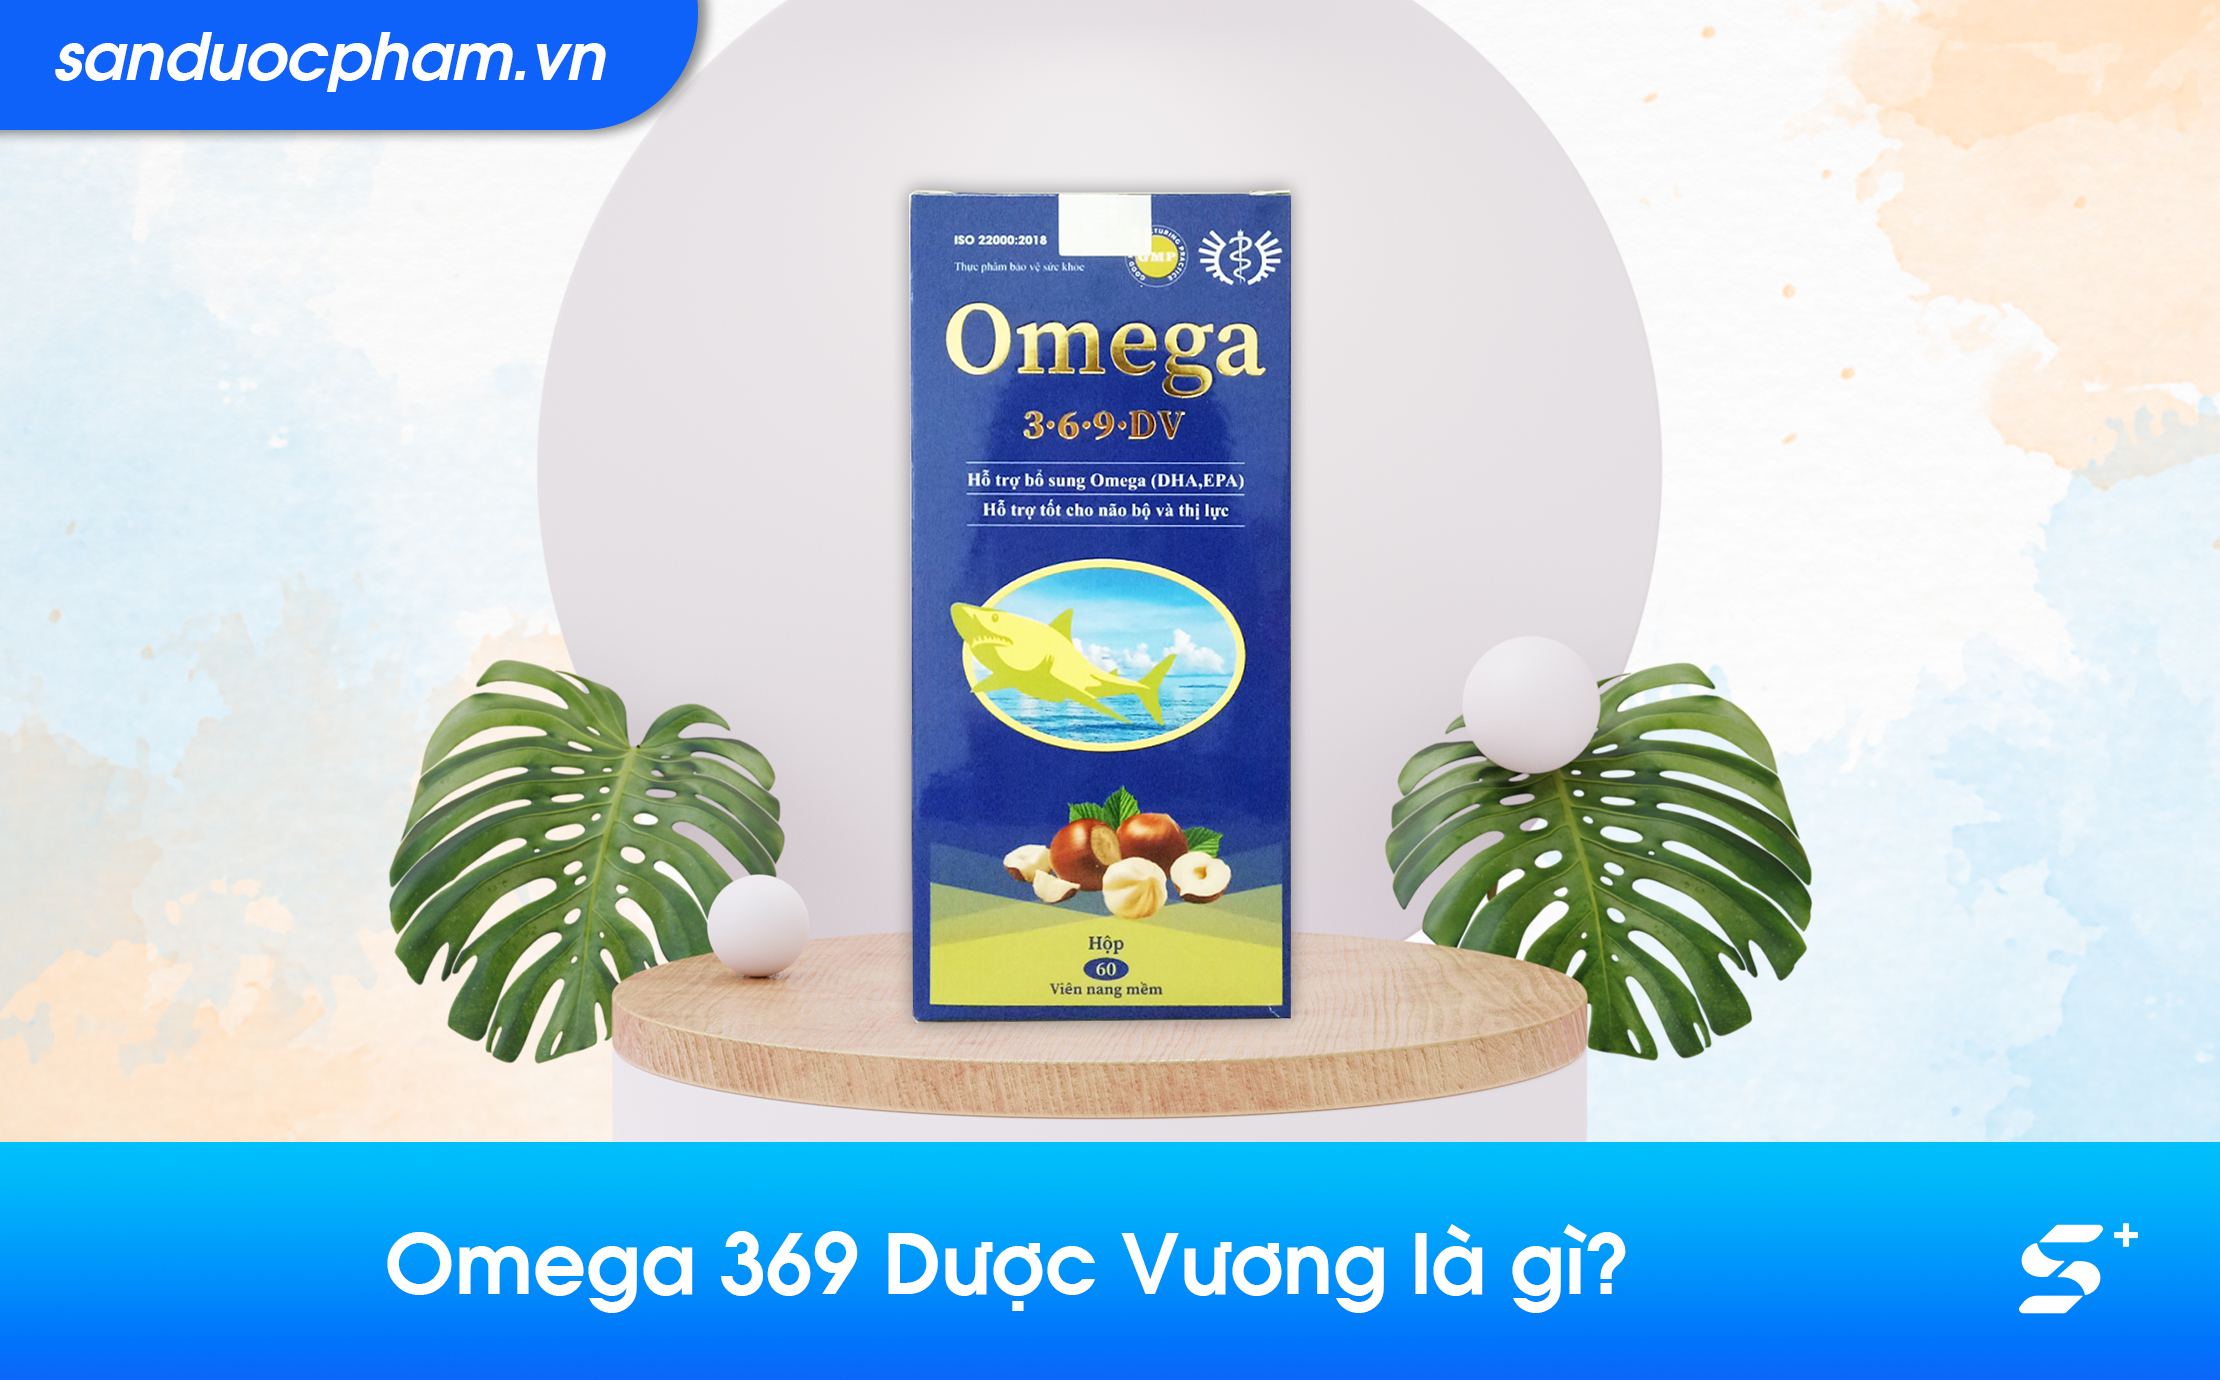 Omega 369 Dược Vương là gì?